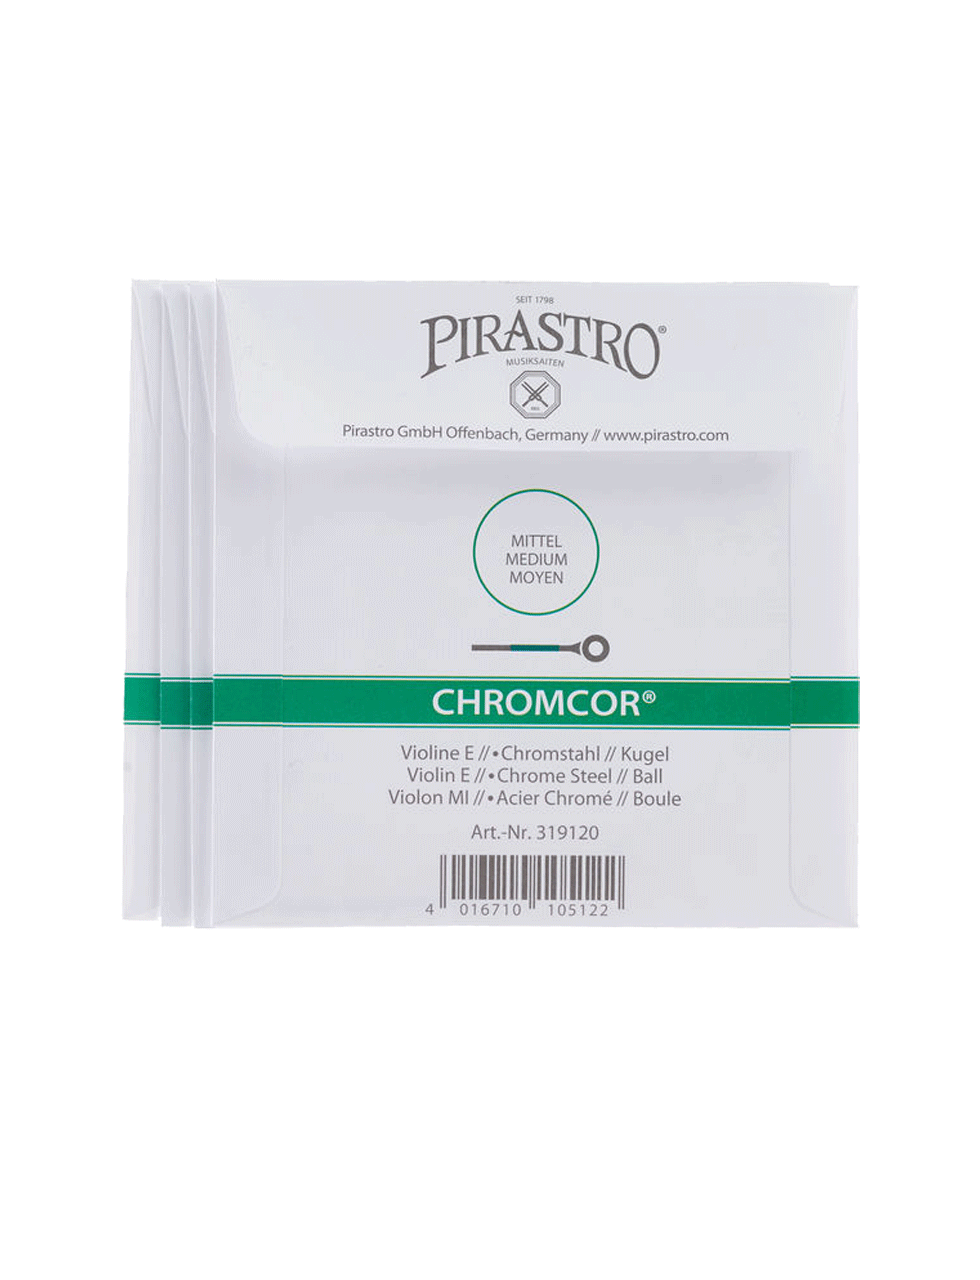 Pirastro-Chromcor-Violine-10385960_800.png